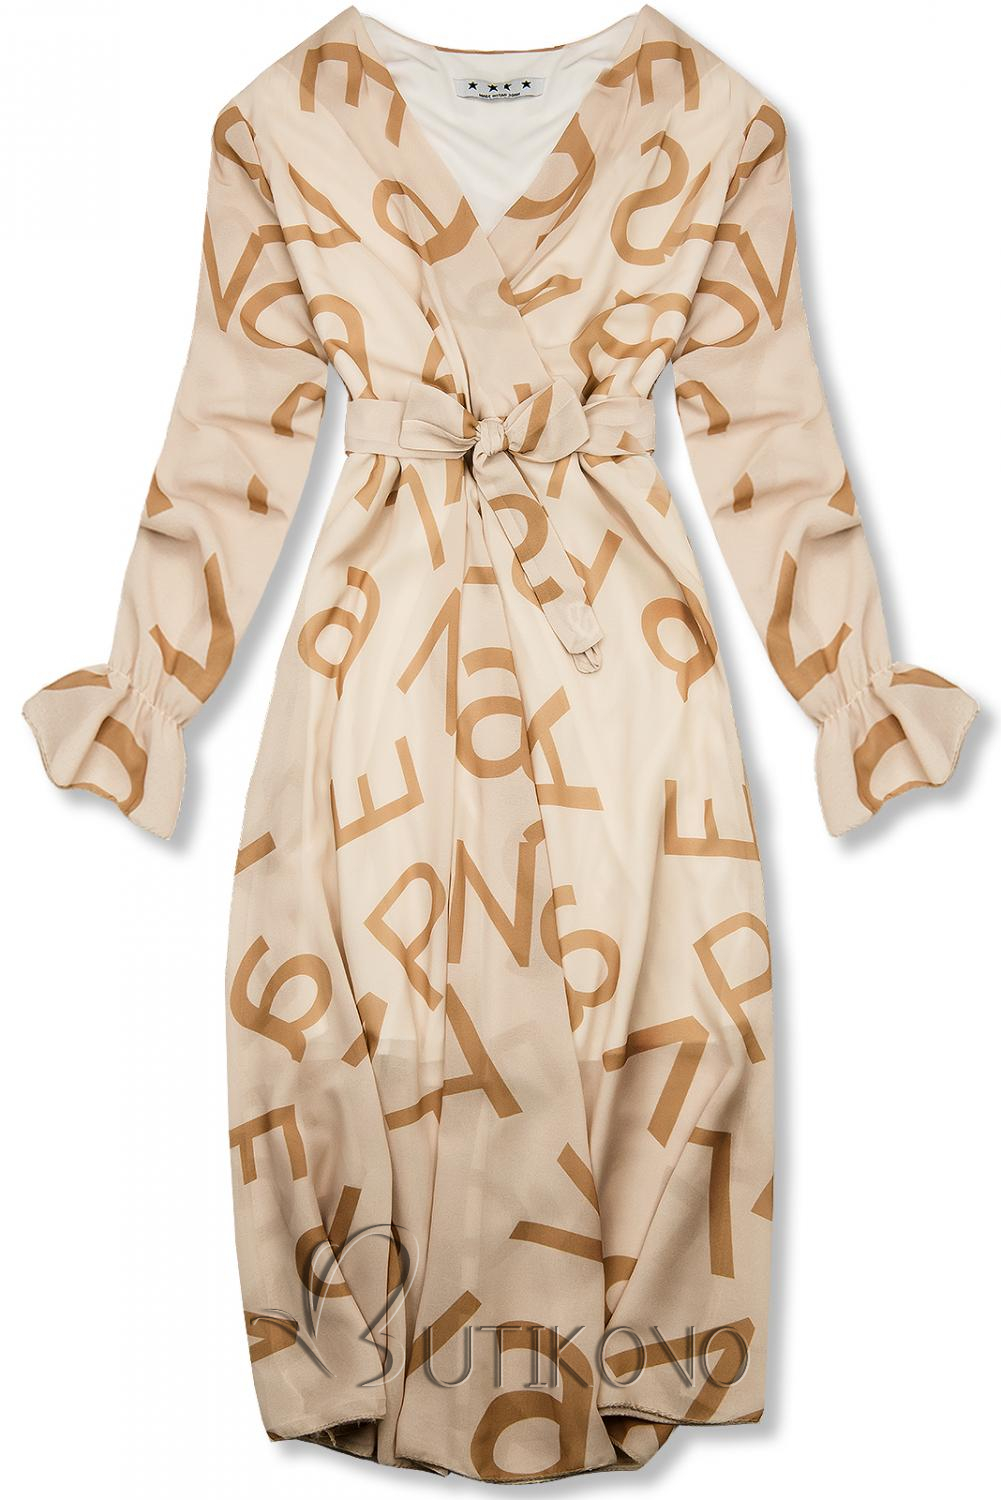 Béžové midi šaty s potiskem písmen